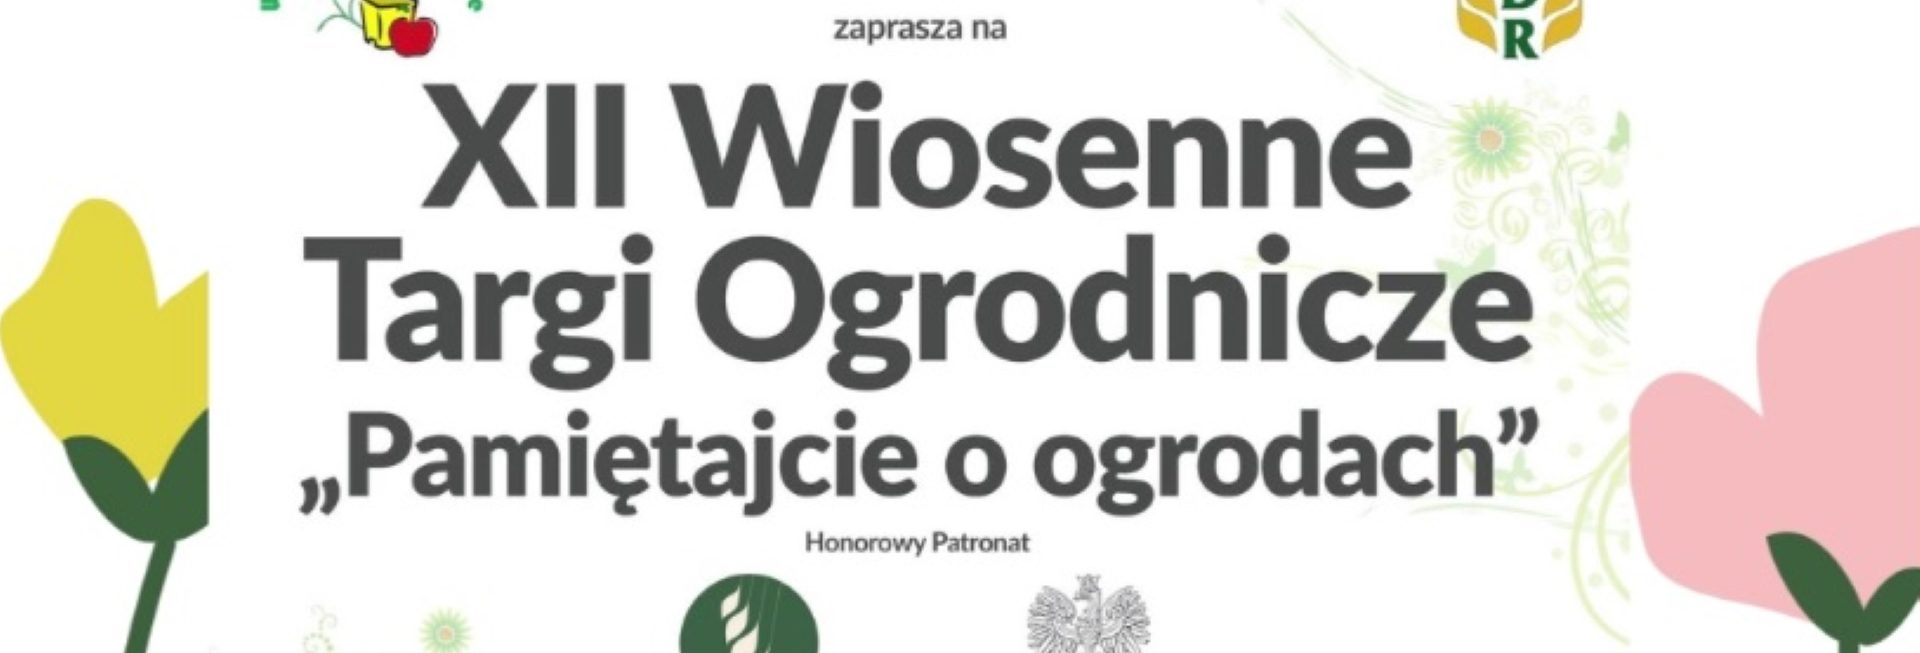 Plakat graficzny zapraszający do Olsztyna na 12. edycję Wiosennych Targów Ogrodniczych "Pamiętajcie o ogrodach" Olsztyn 2022.